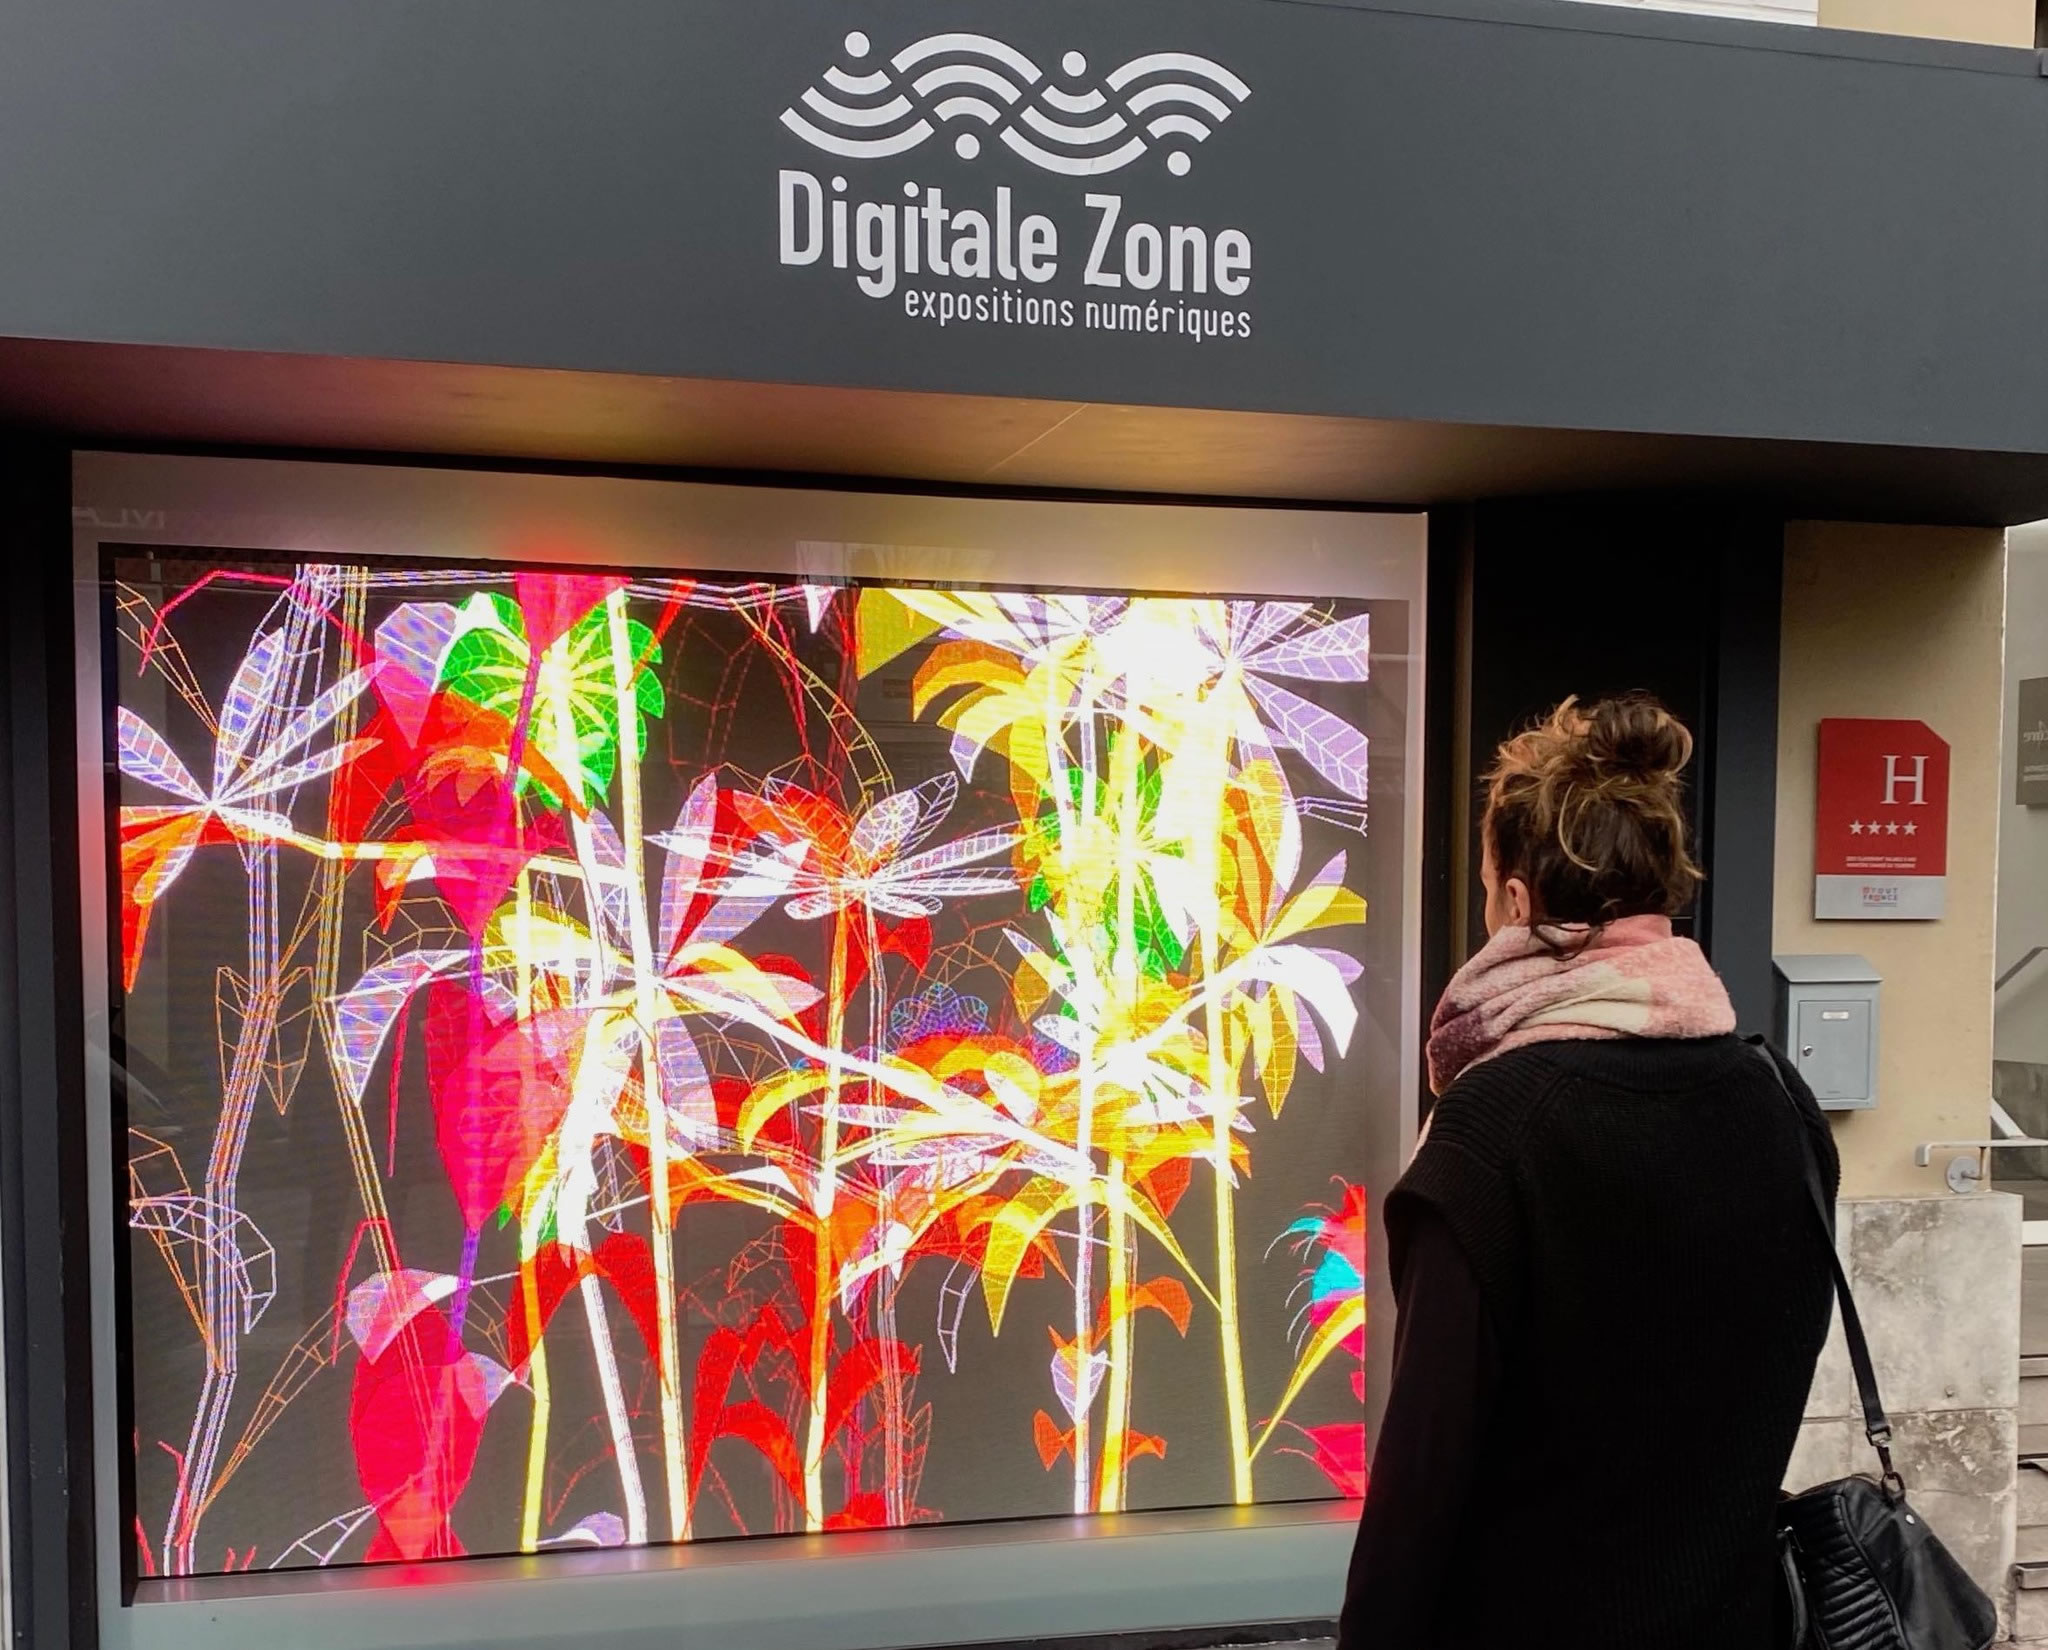 Digitale zone, depuis 2020, expositions numériques 24h/24